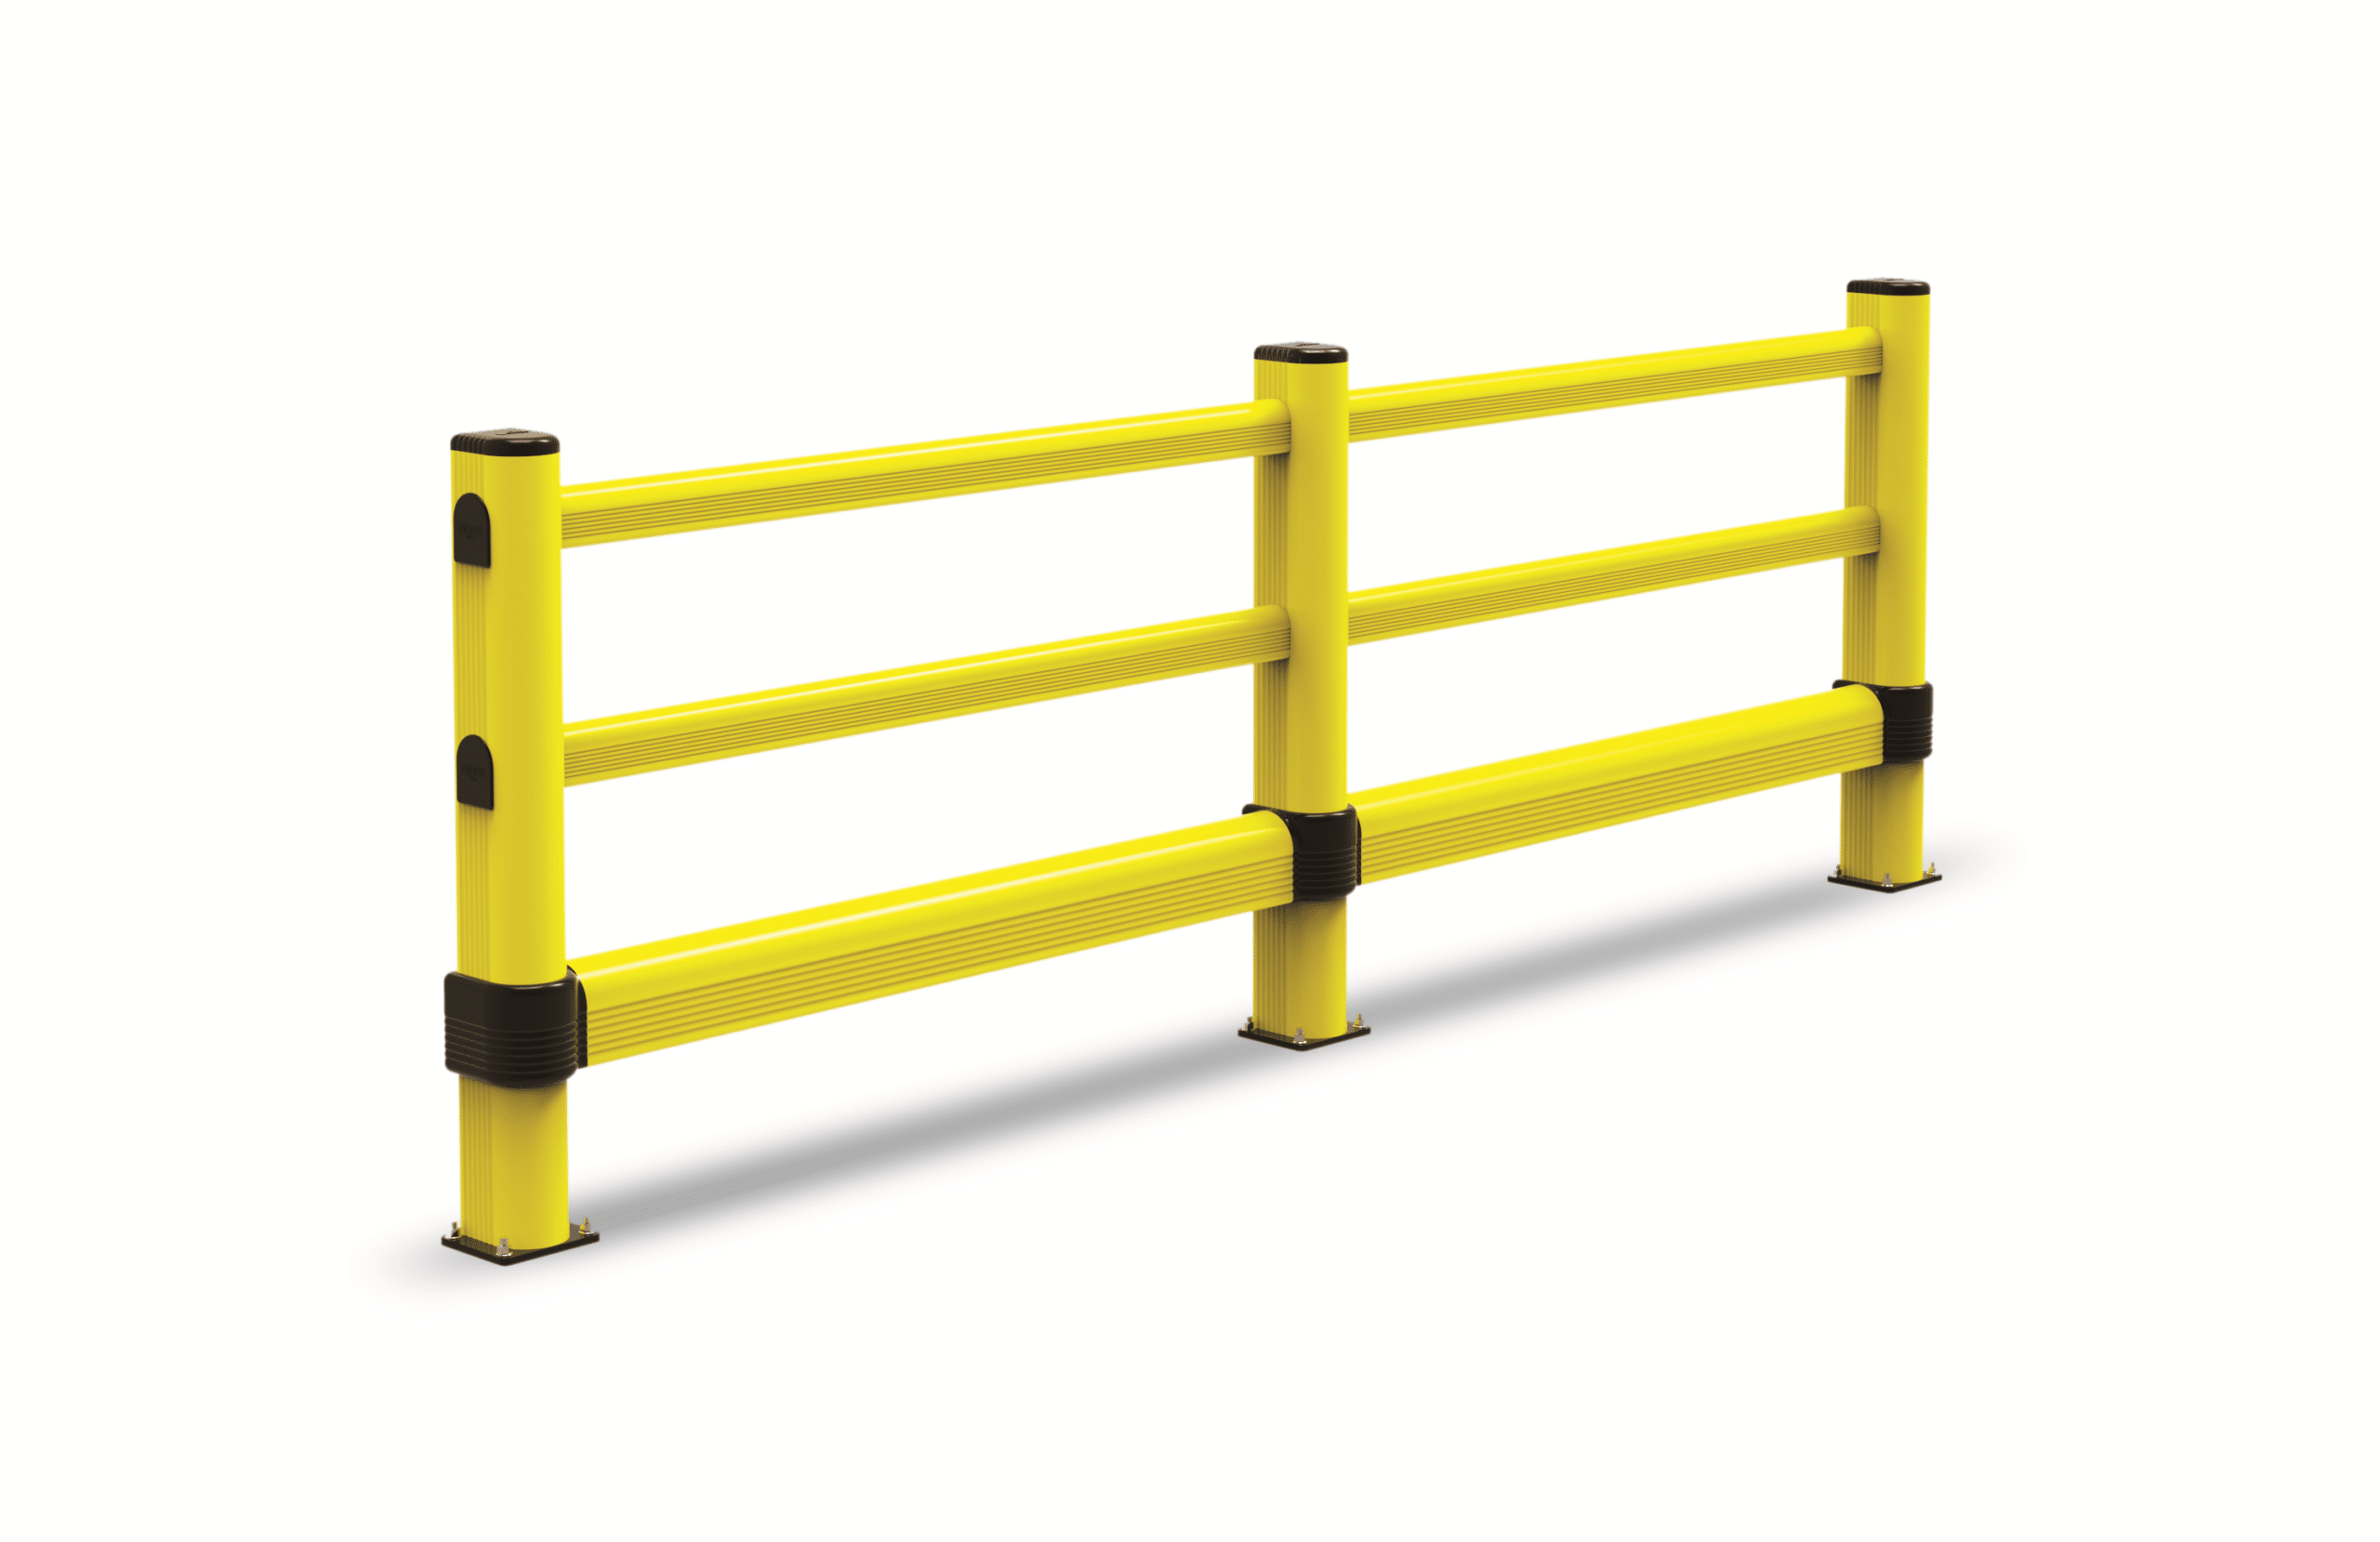 Barrera de protección peatonal flexible con barra inferior regulable. Barrera flexible modulable.